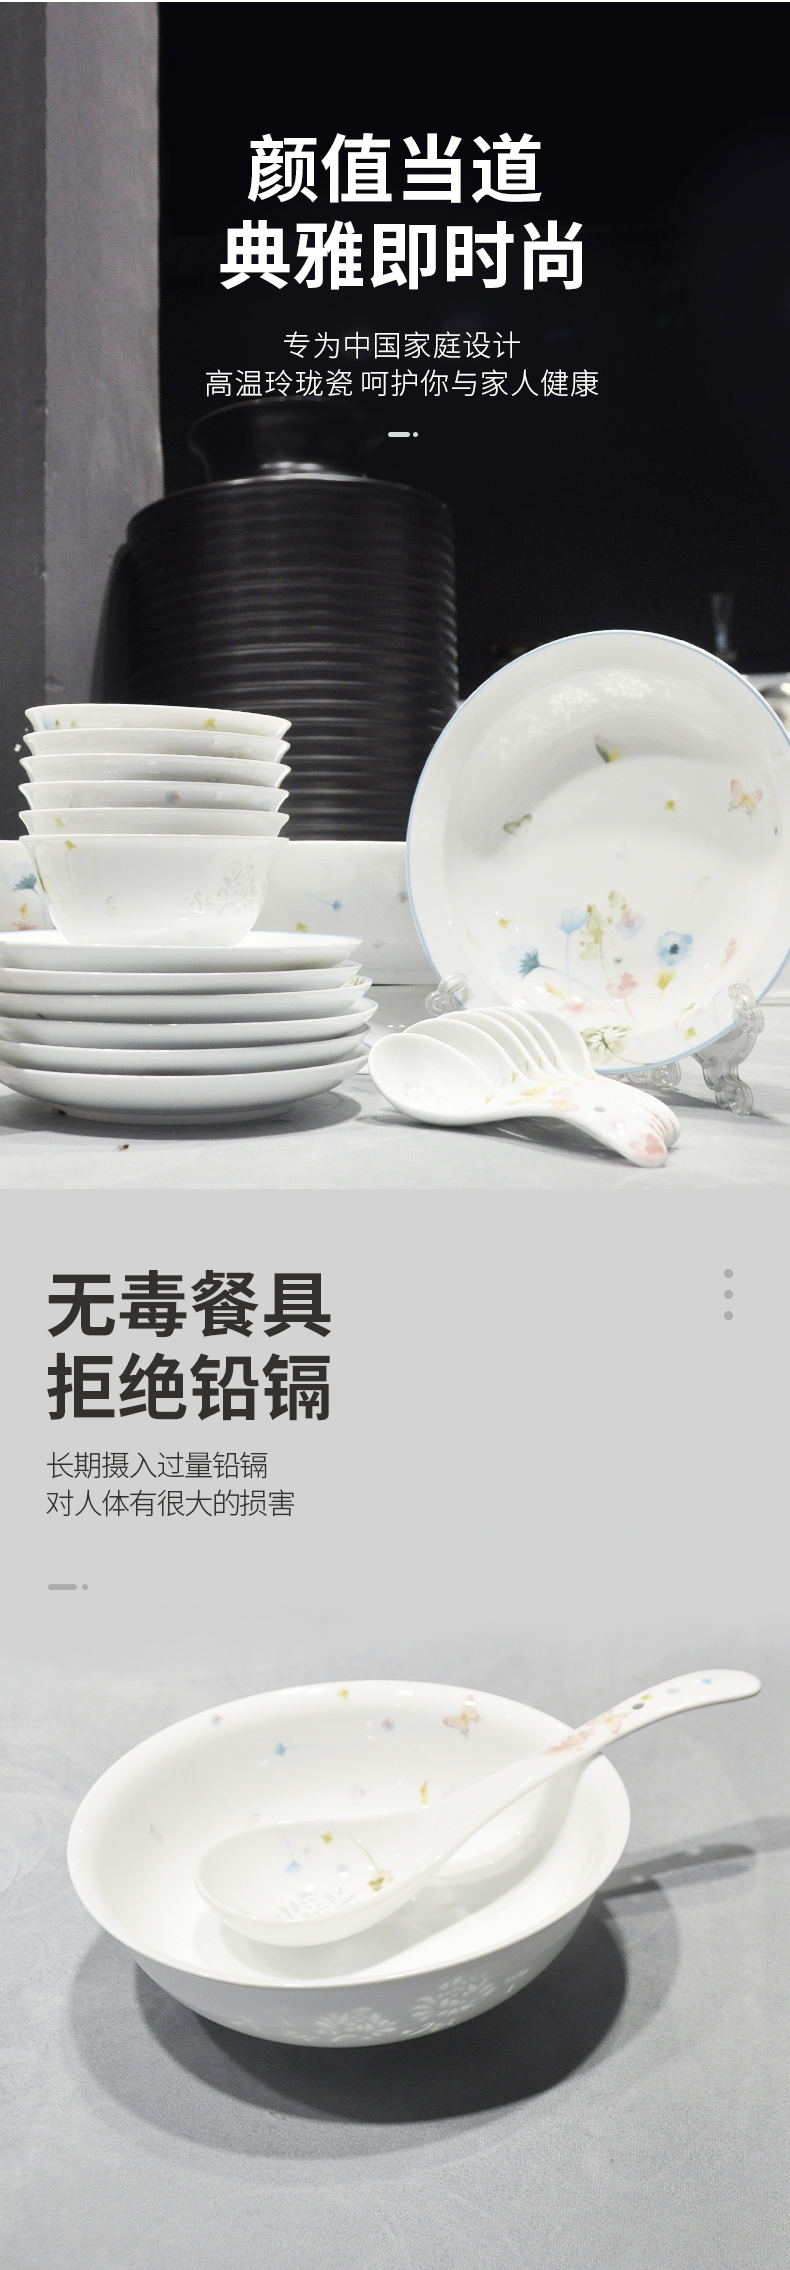 古镇陶瓷碗碟套装家用餐具套装个性创意瓷碗白瓷玲珑餐具拼盘组合